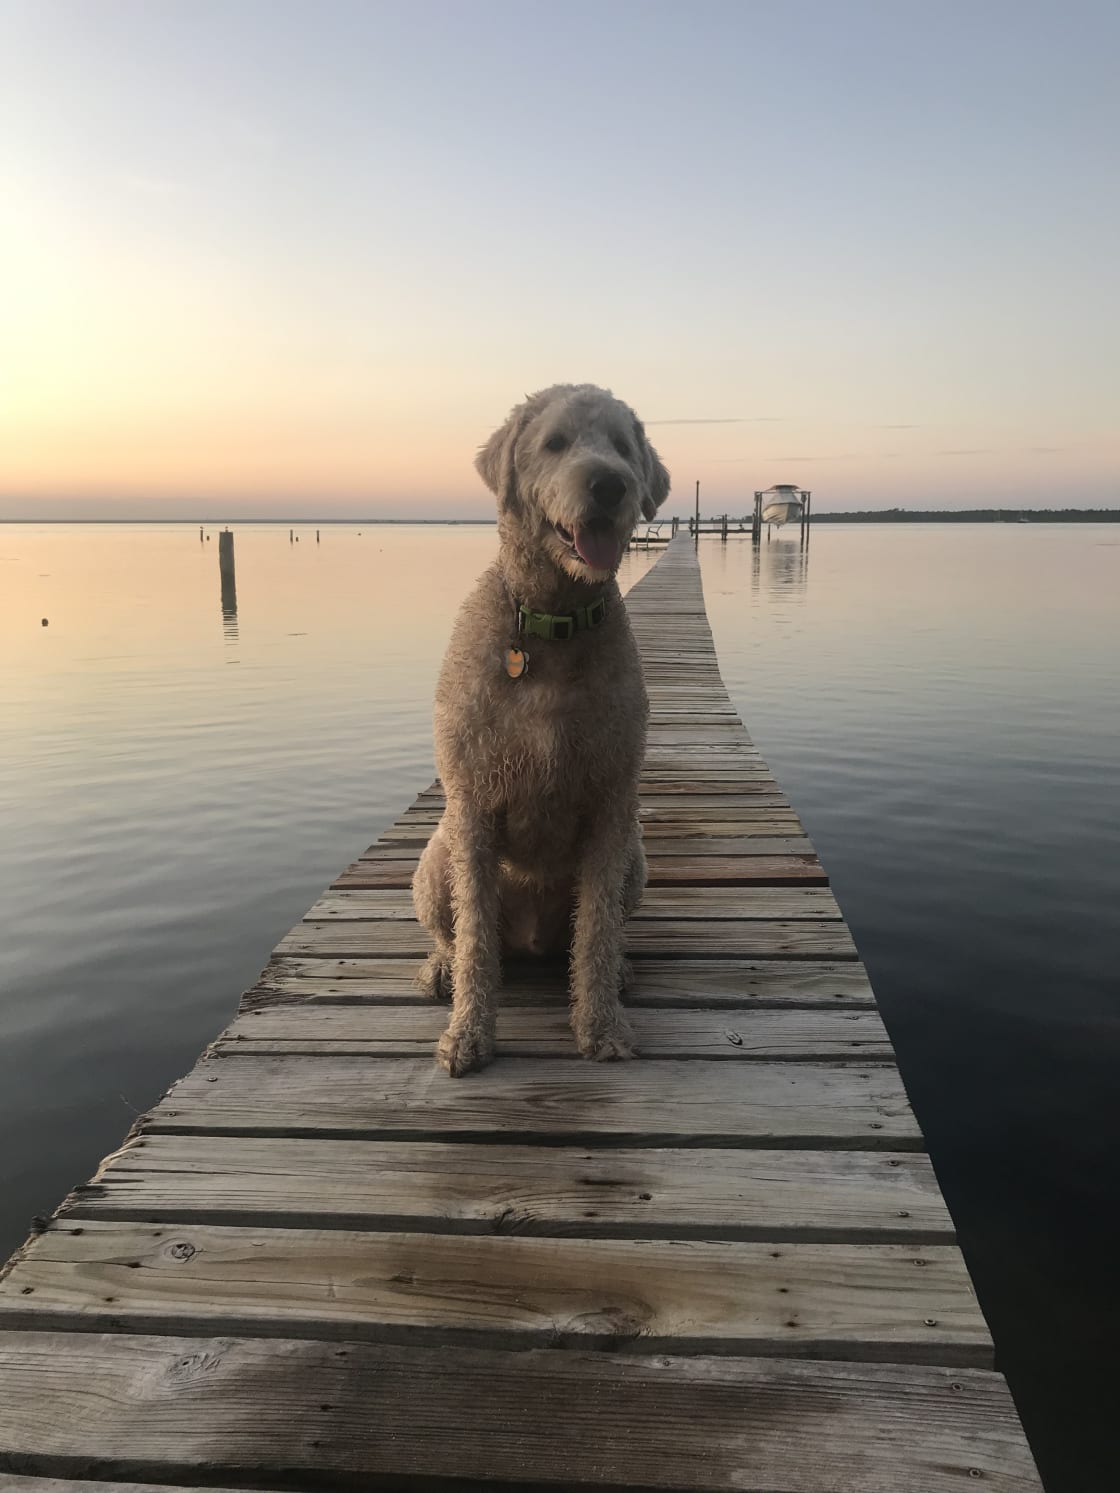 Teddy on the dock.